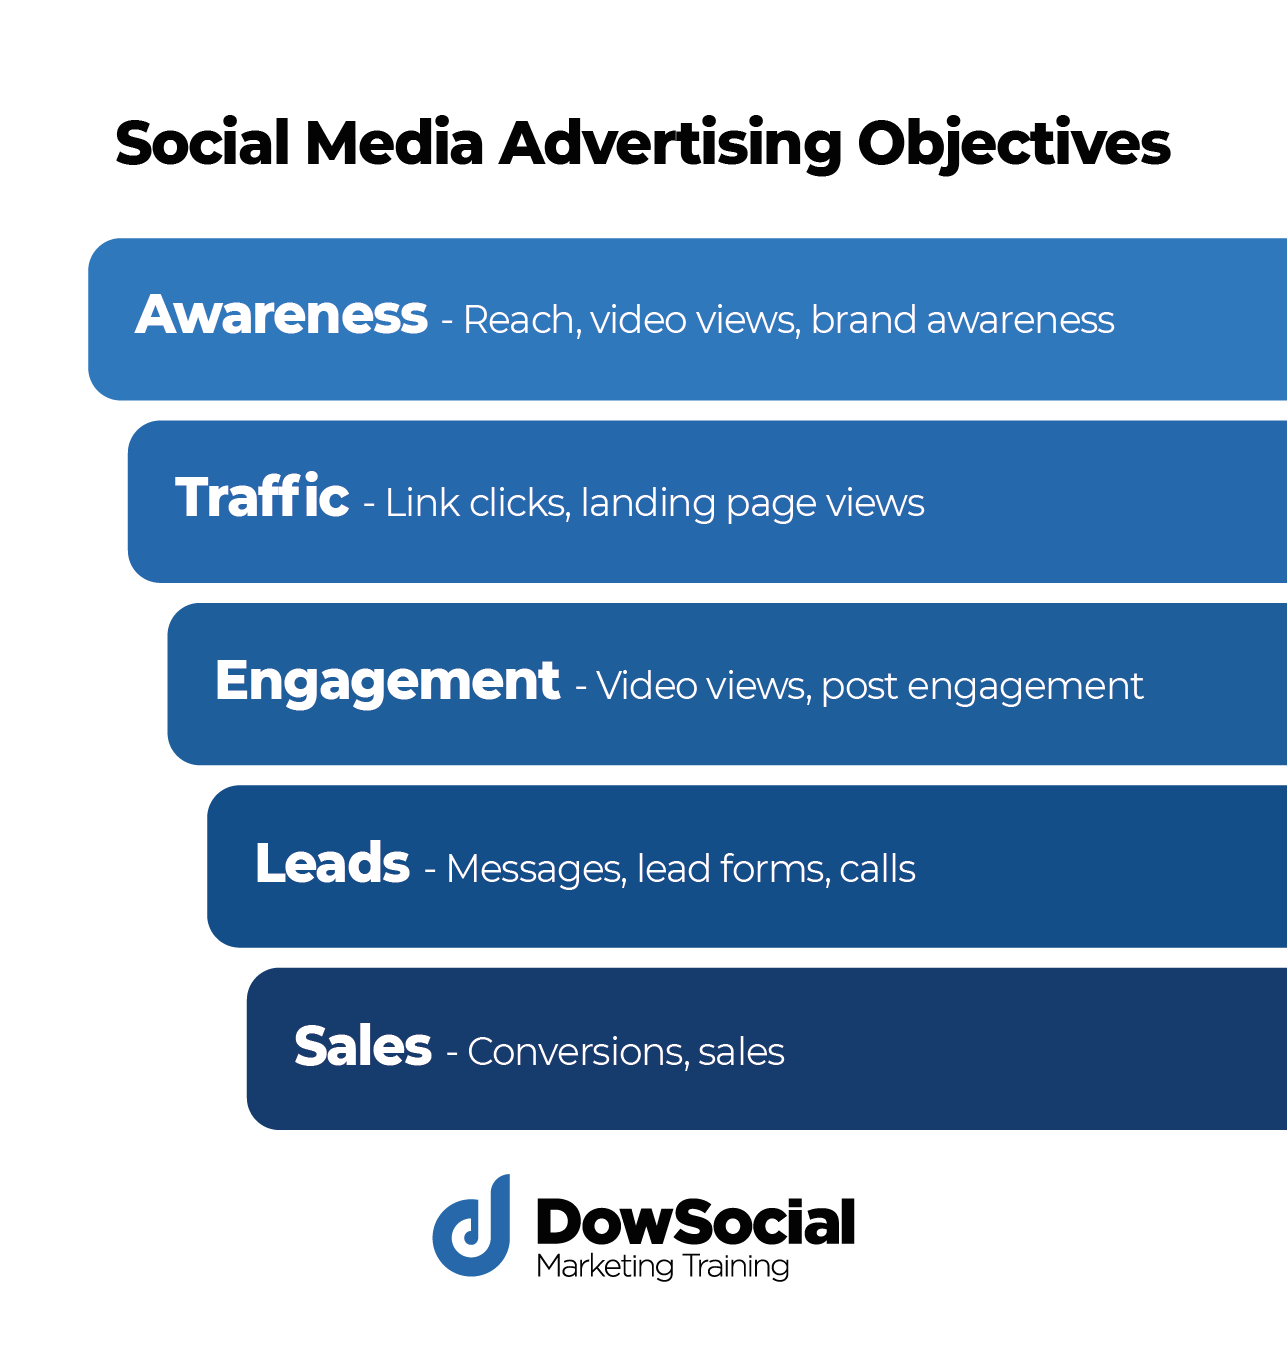 List of social media advertising objectives.